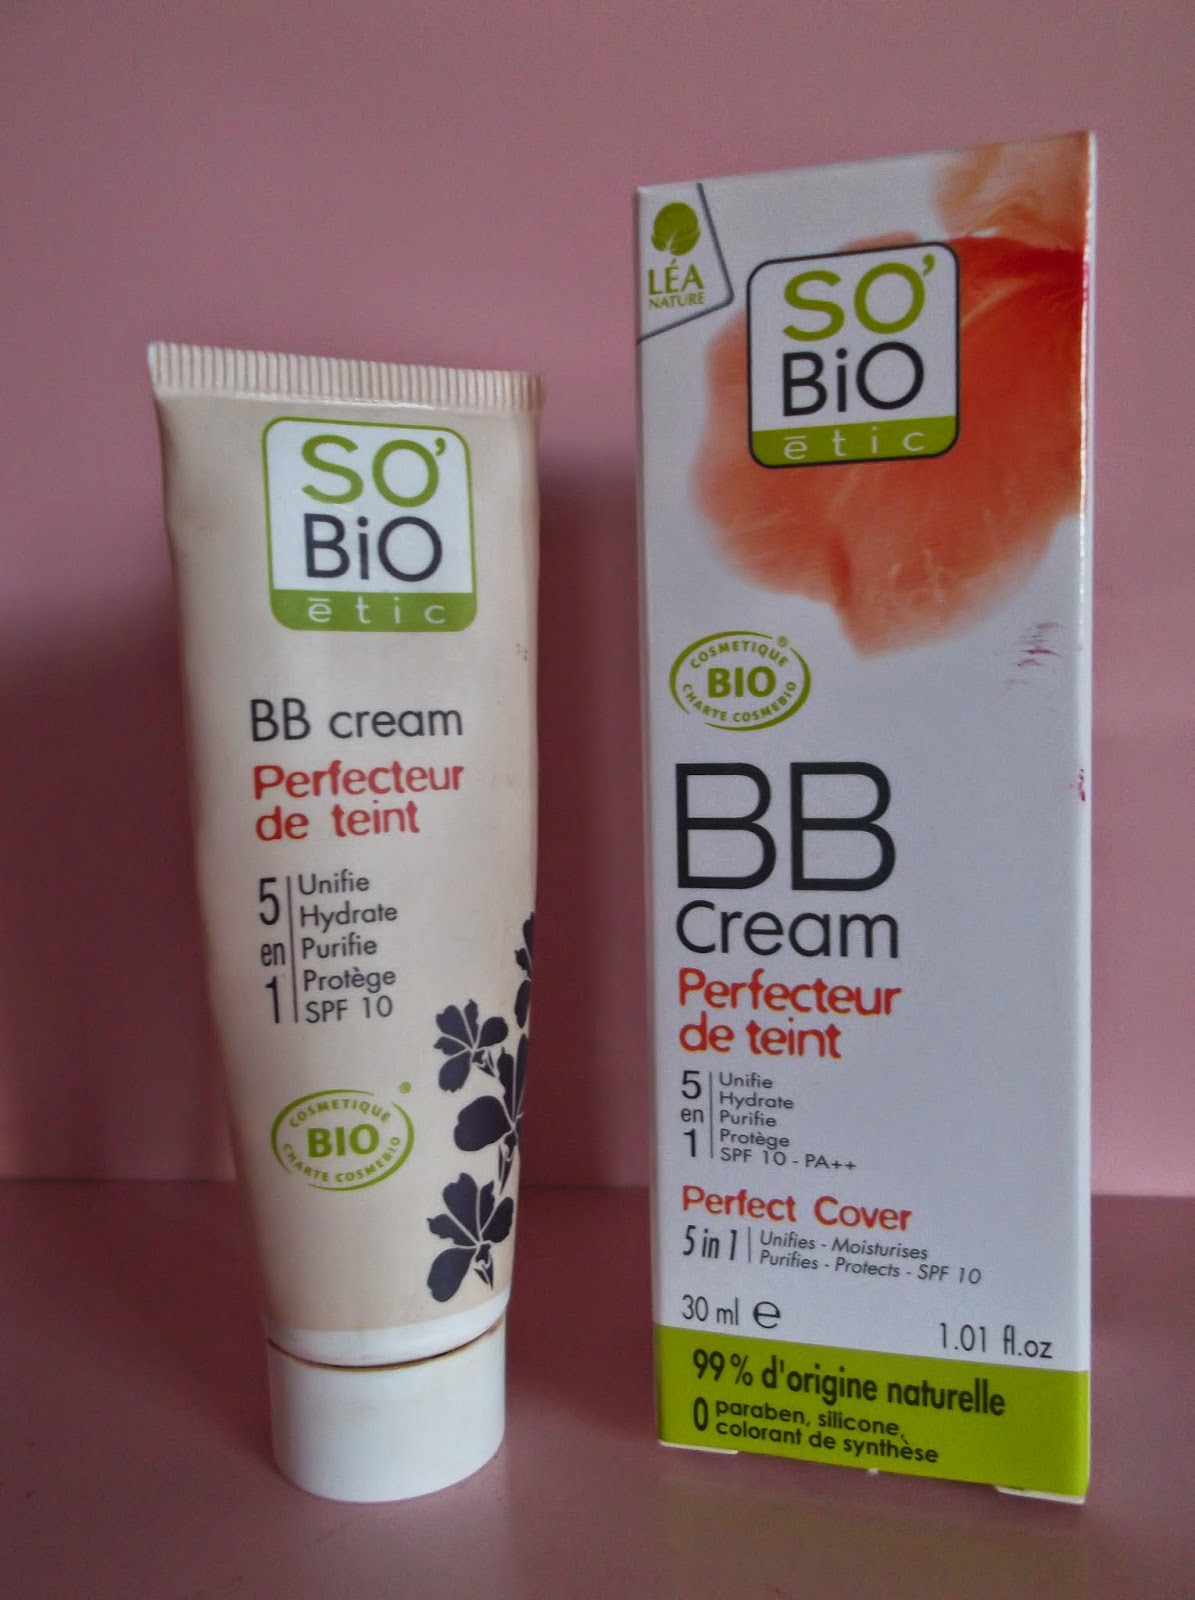 BB Cream "Perfecteur de Teint" di So'bio Etic